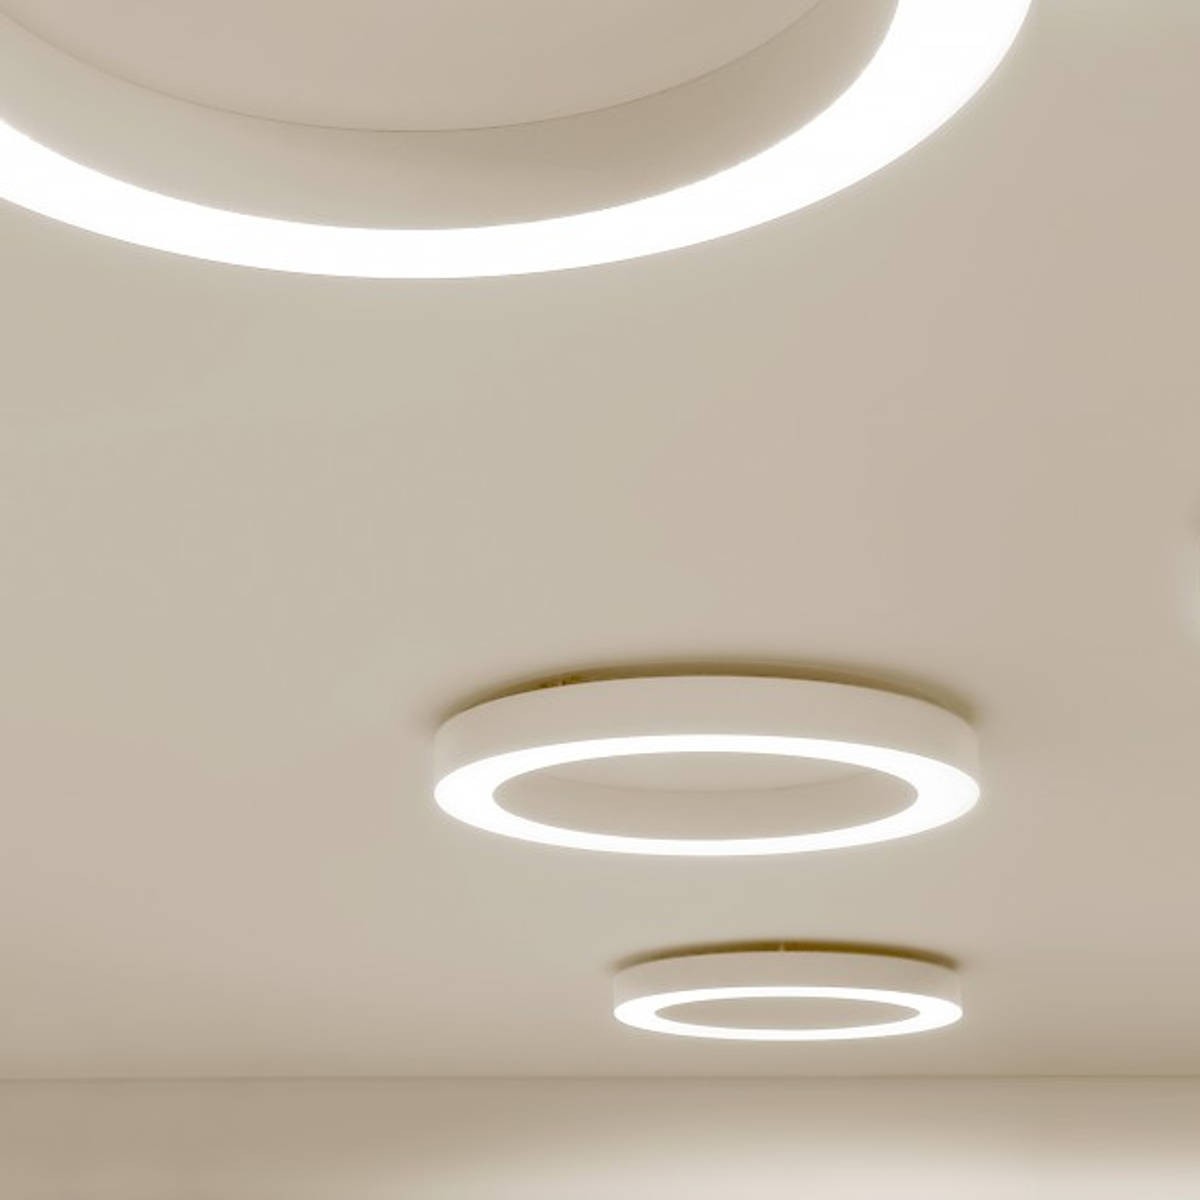 Plafoniera minimale con struttura in alluminio, dalla forma circolare a  forma di anello con colore bianco con luce a led ( 50W ) integrata